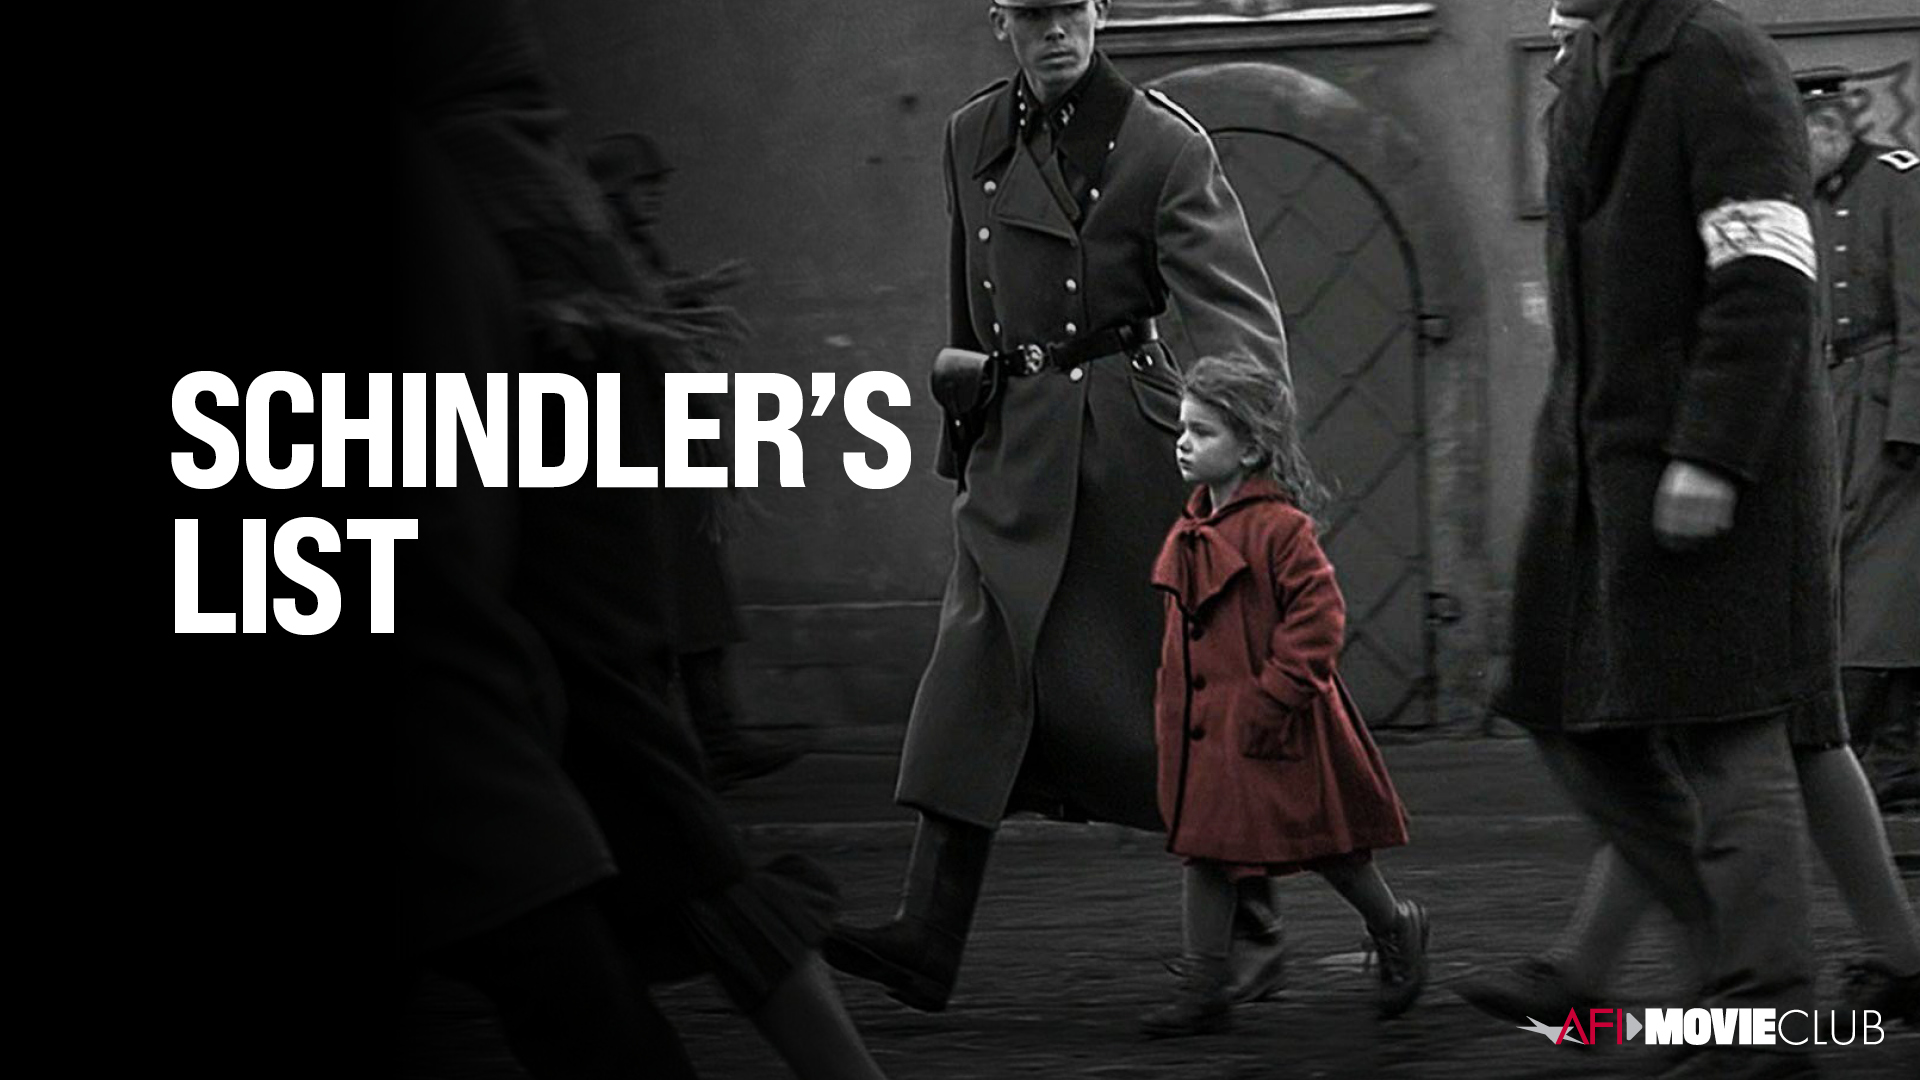 Schindler's List Film Still